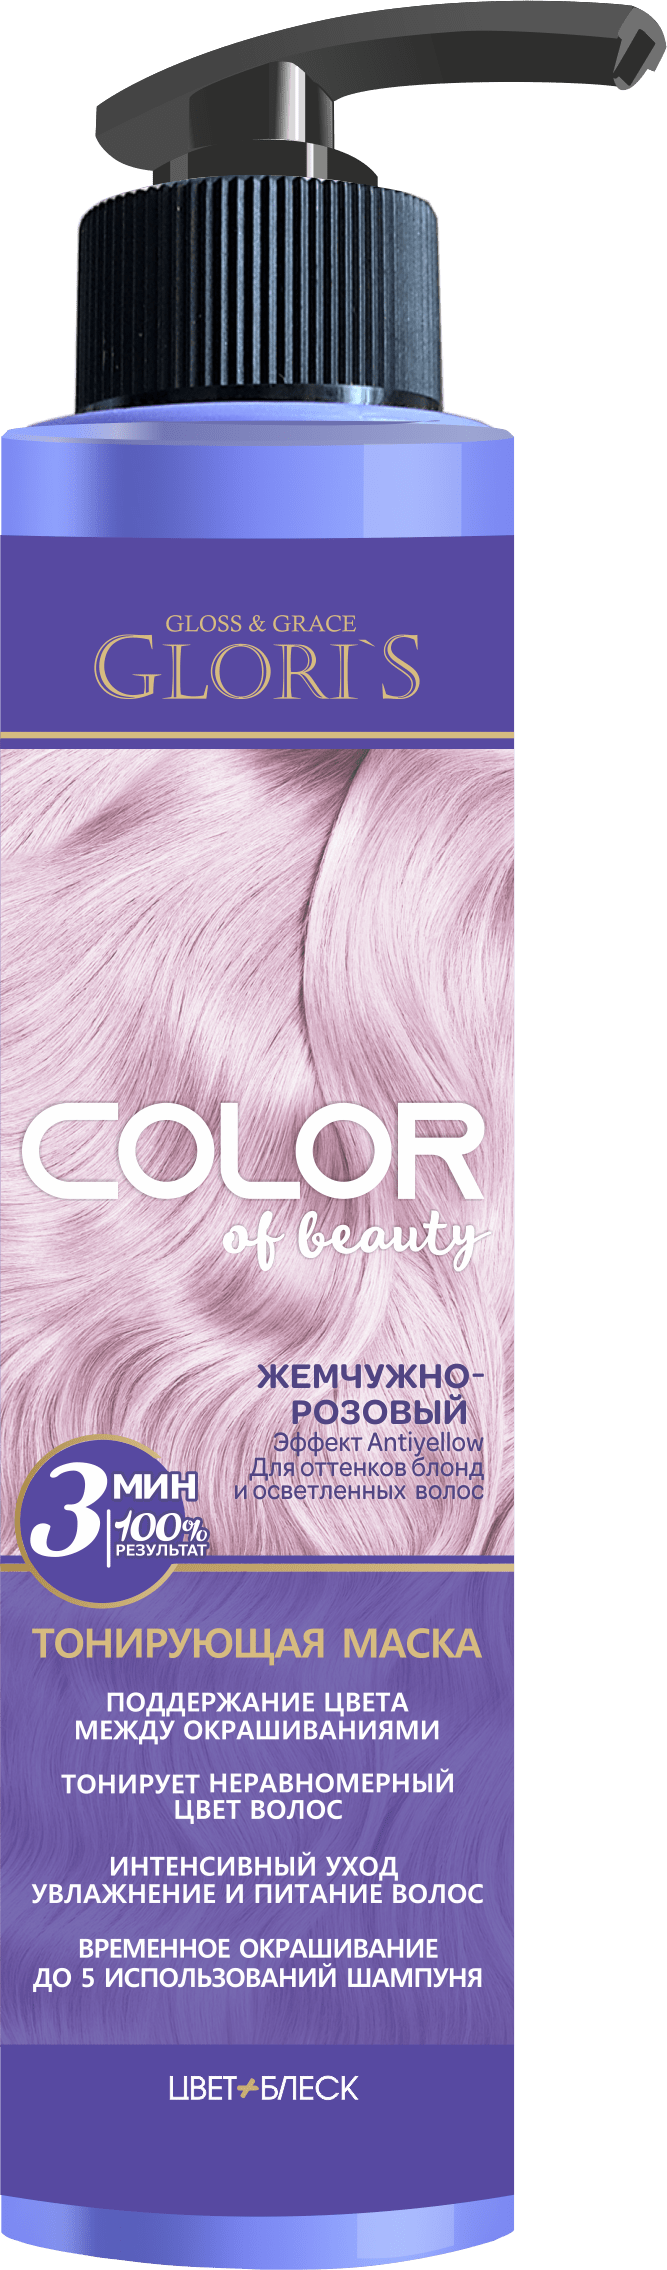 Маска тонирующая Gloris Color of beaty для поддержания цвета Жемчужно-розовый, 200 мл